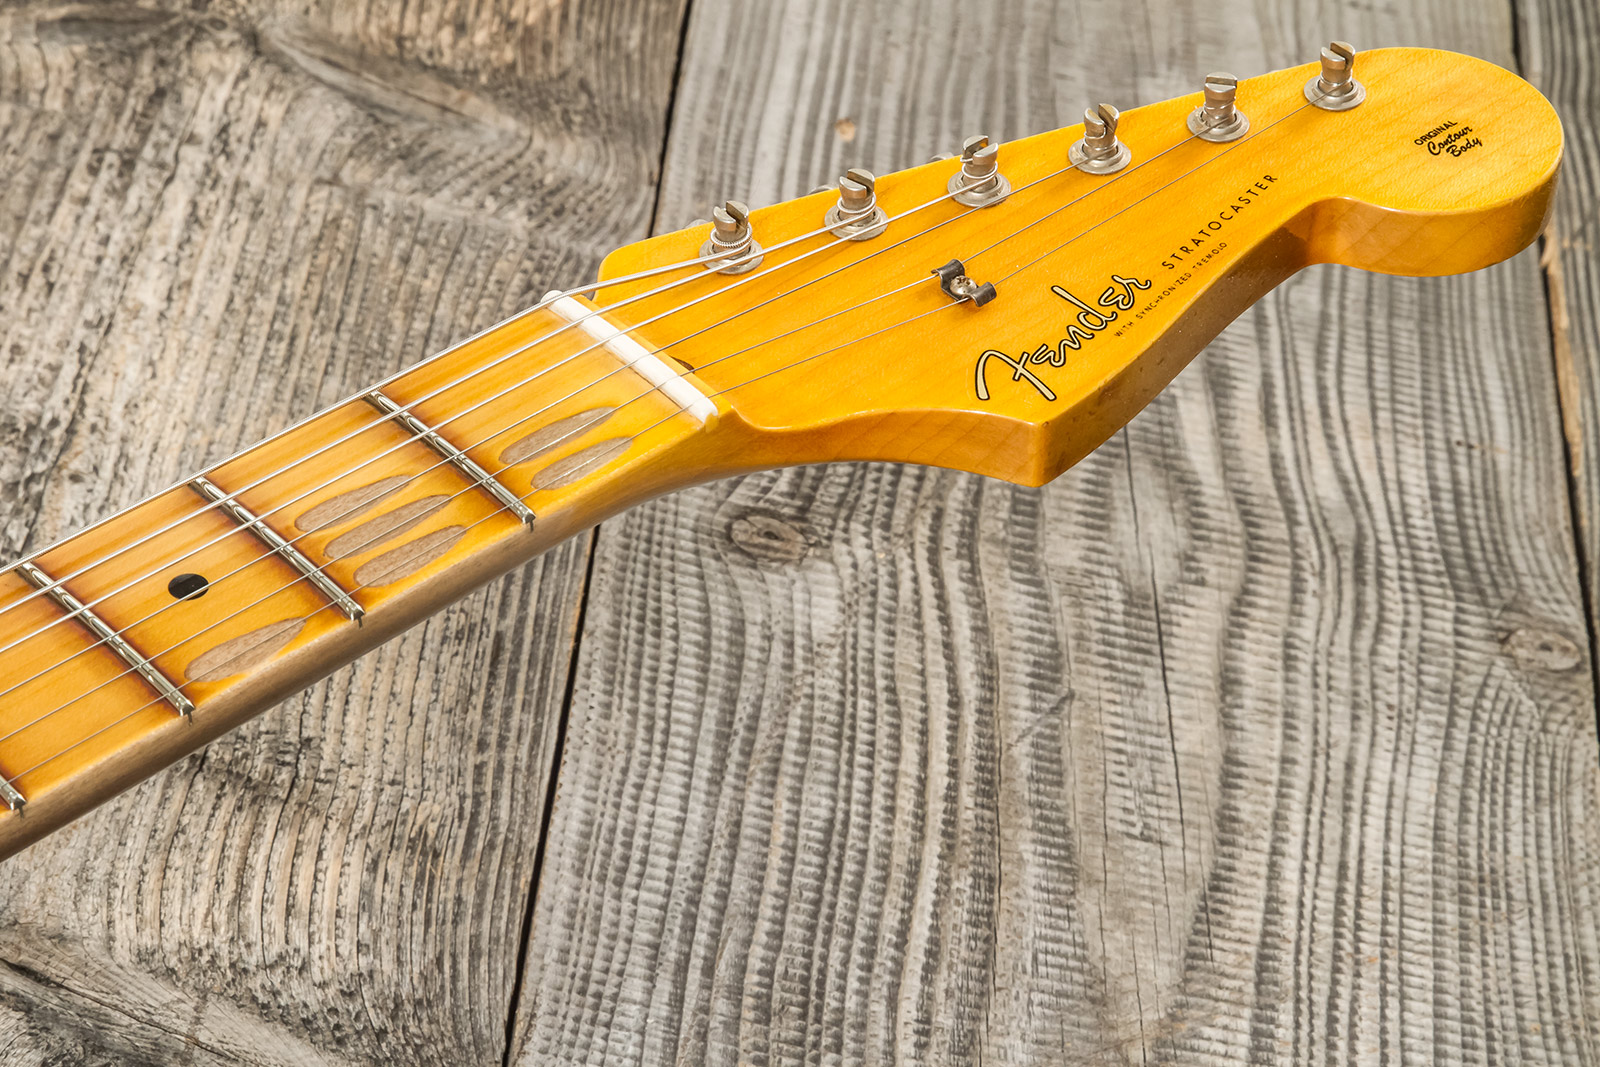 Fender Custom Shop Strat 1956 3s Trem Mn #cz575333 - Journeyman Relic 2-color Sunburst - E-Gitarre in Str-Form - Variation 6